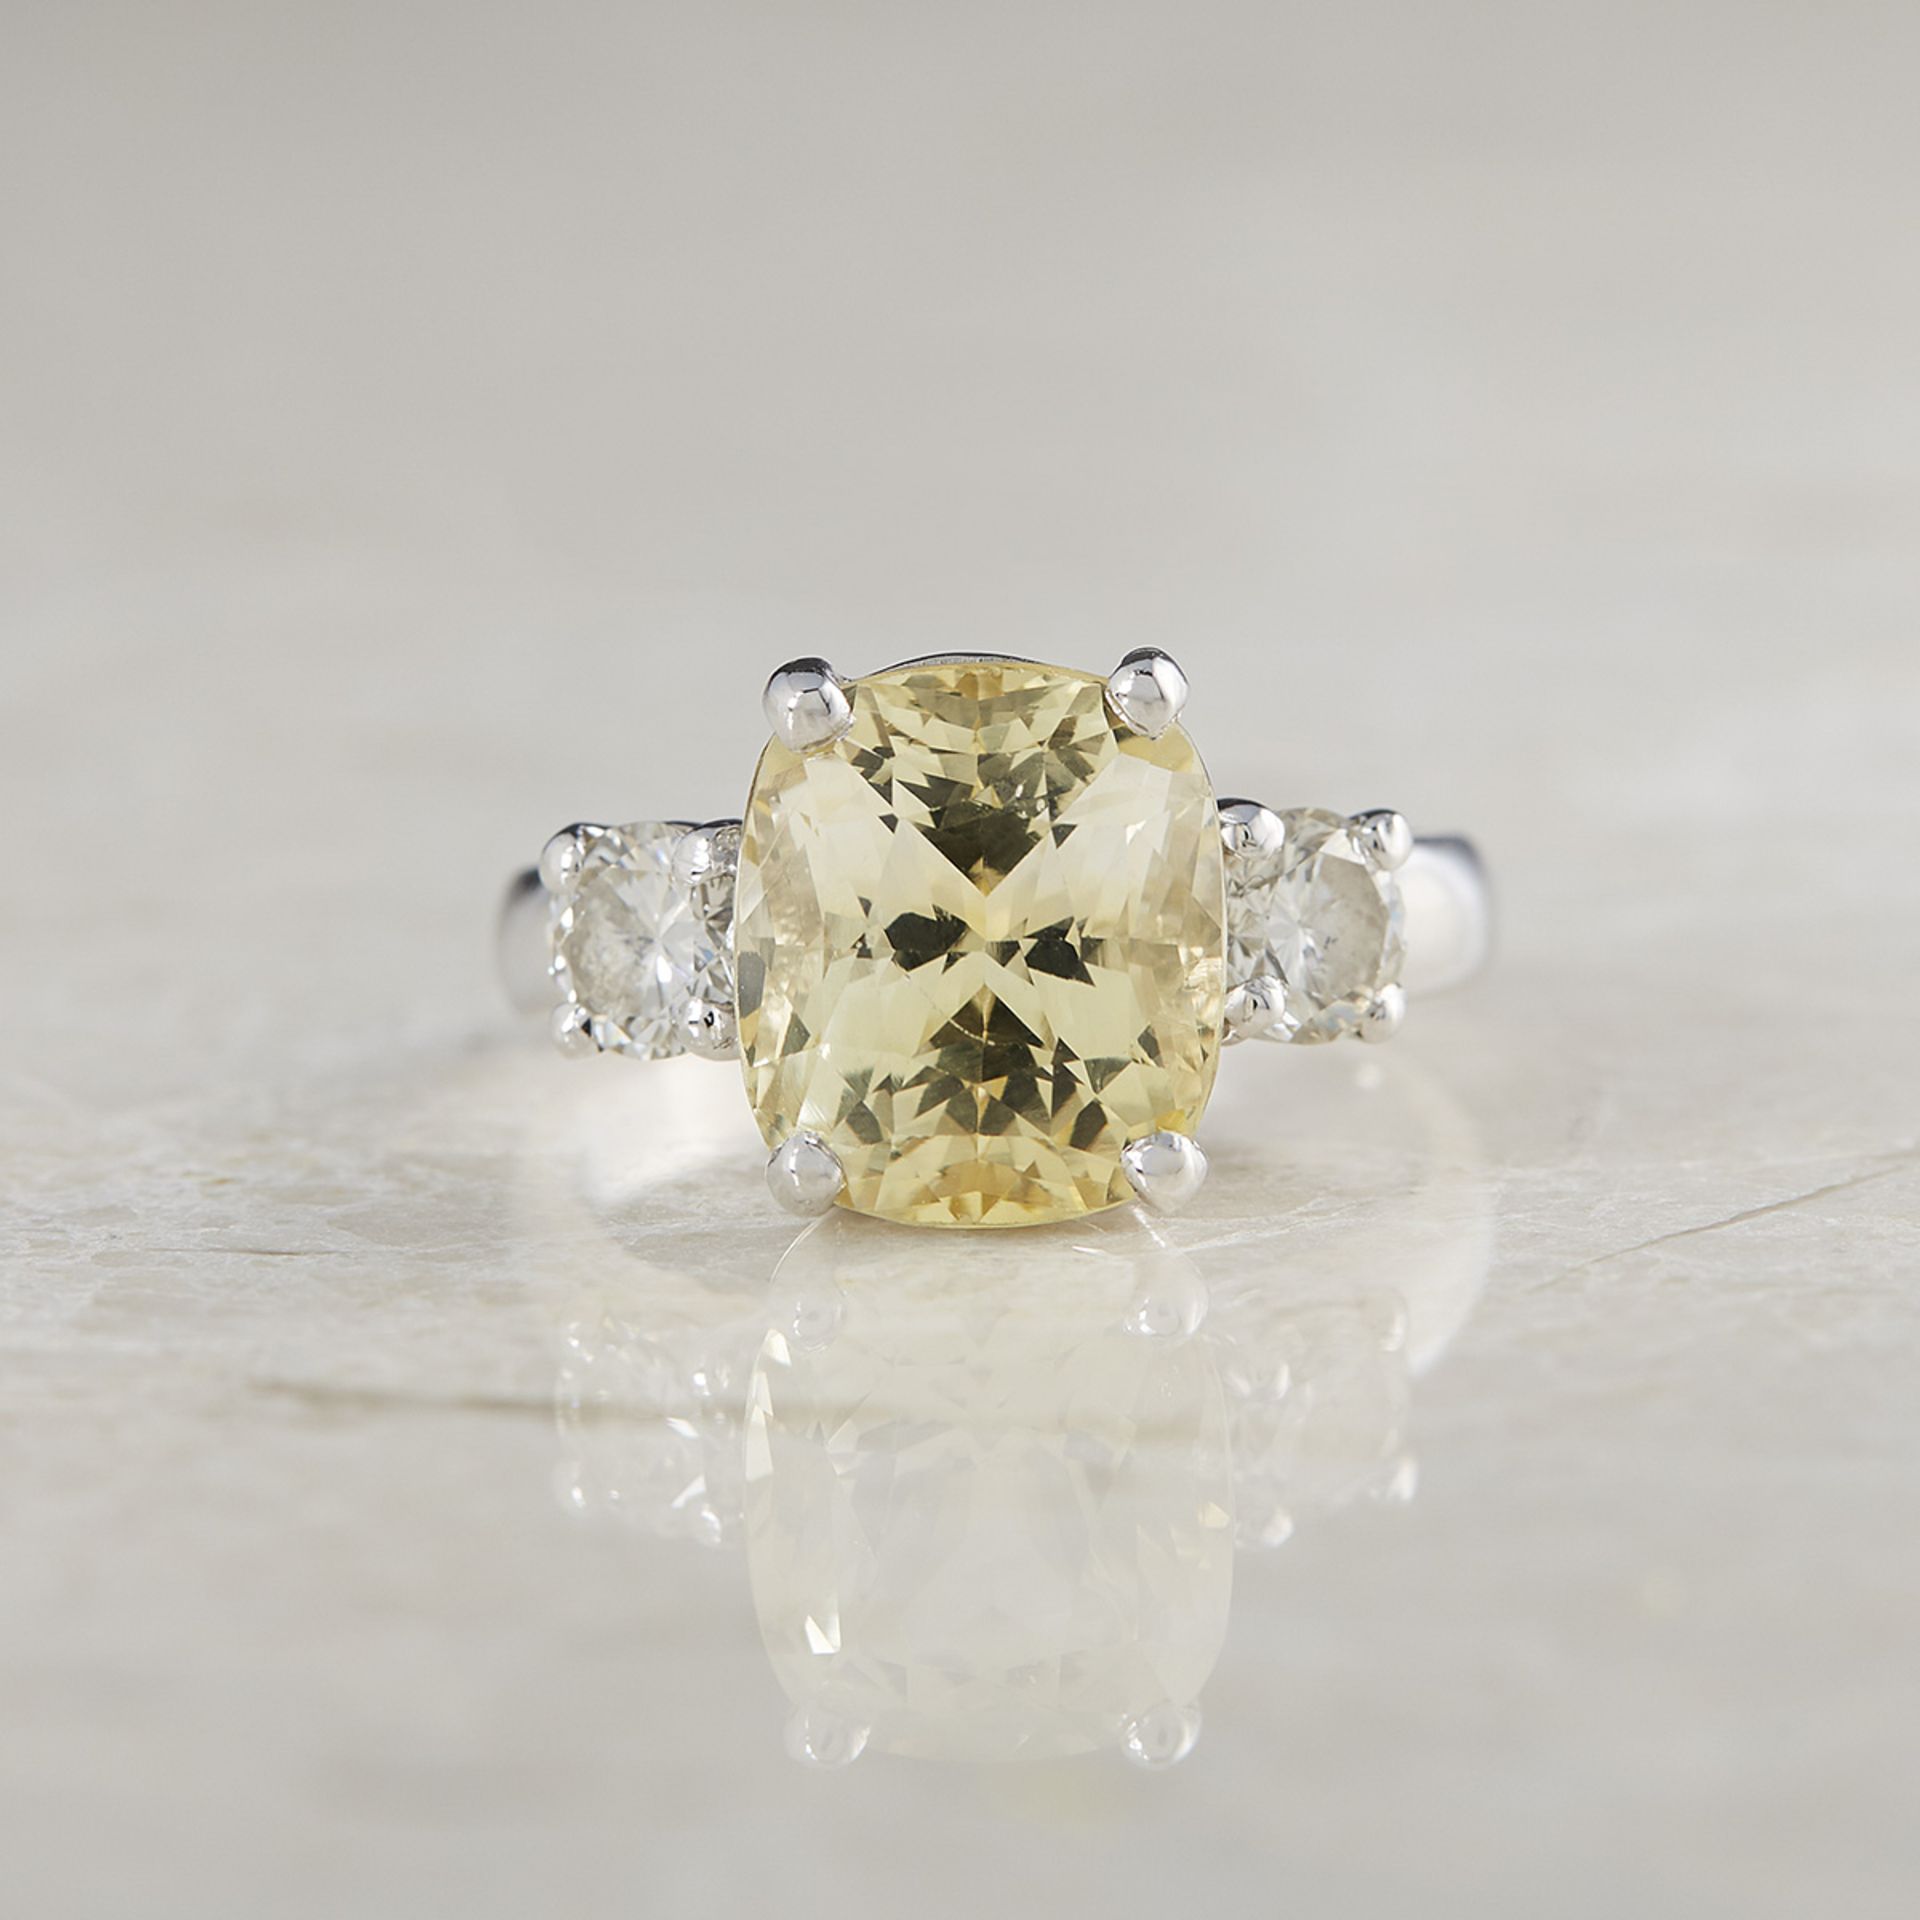 Platinum 6.07ct Yellow Sapphire & 0.68ct Diamond Ring - Image 3 of 8